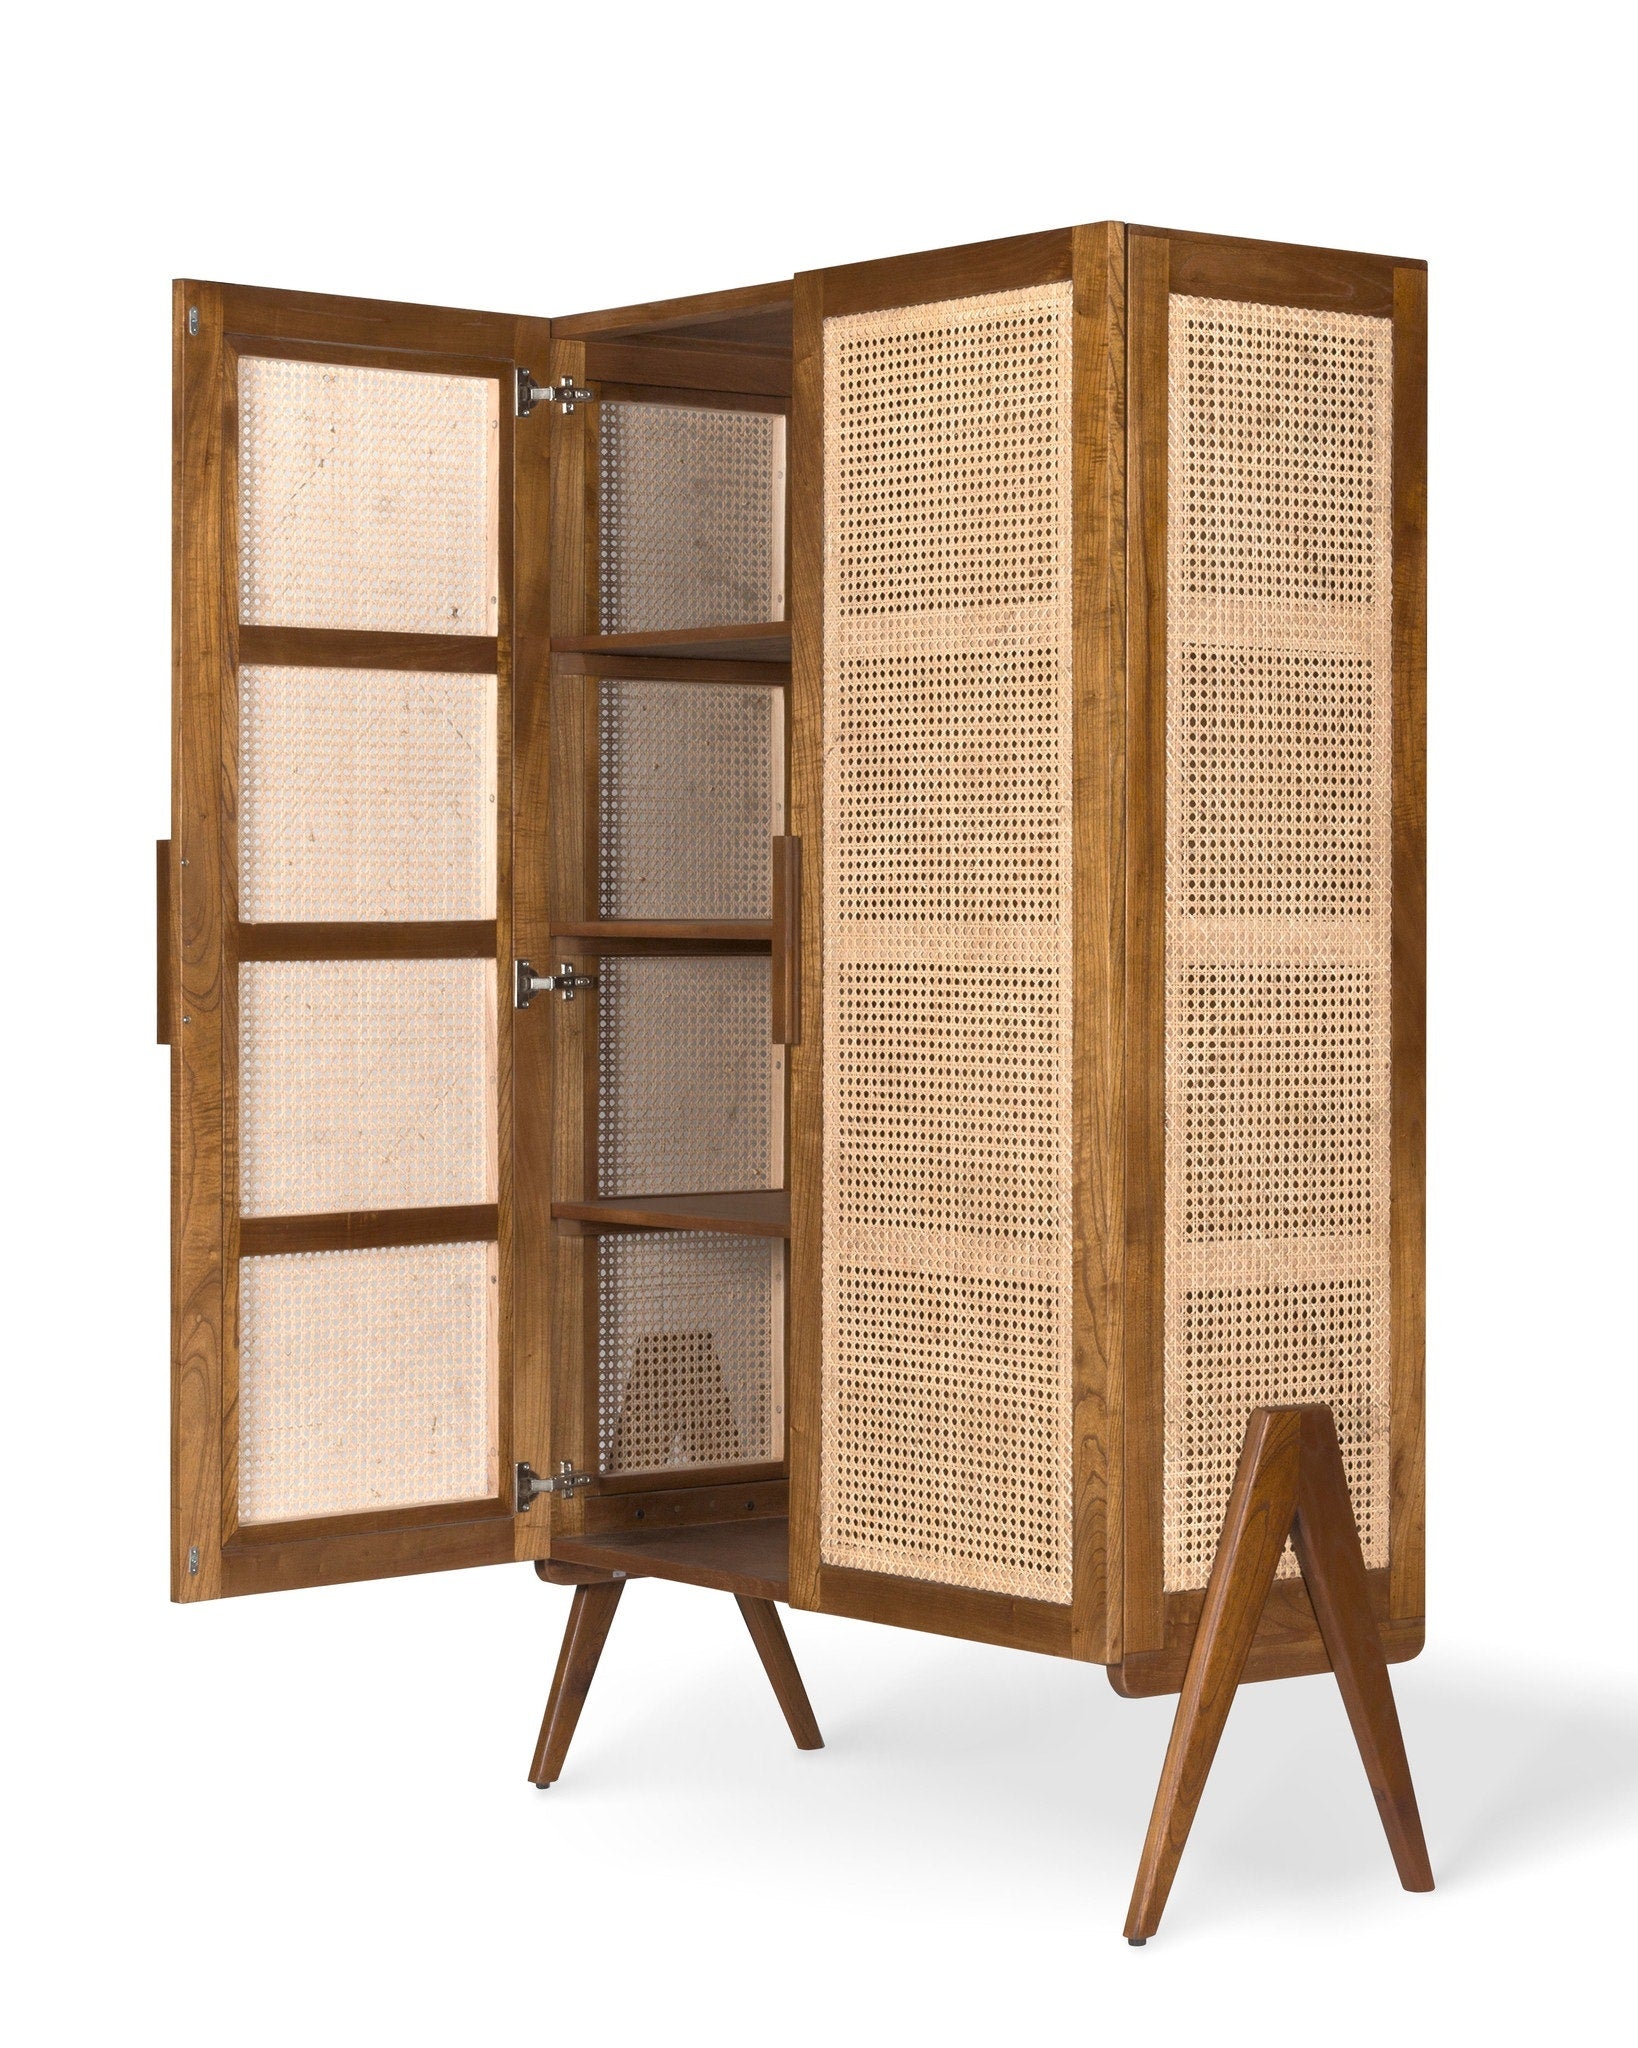 Storage cabinet brown